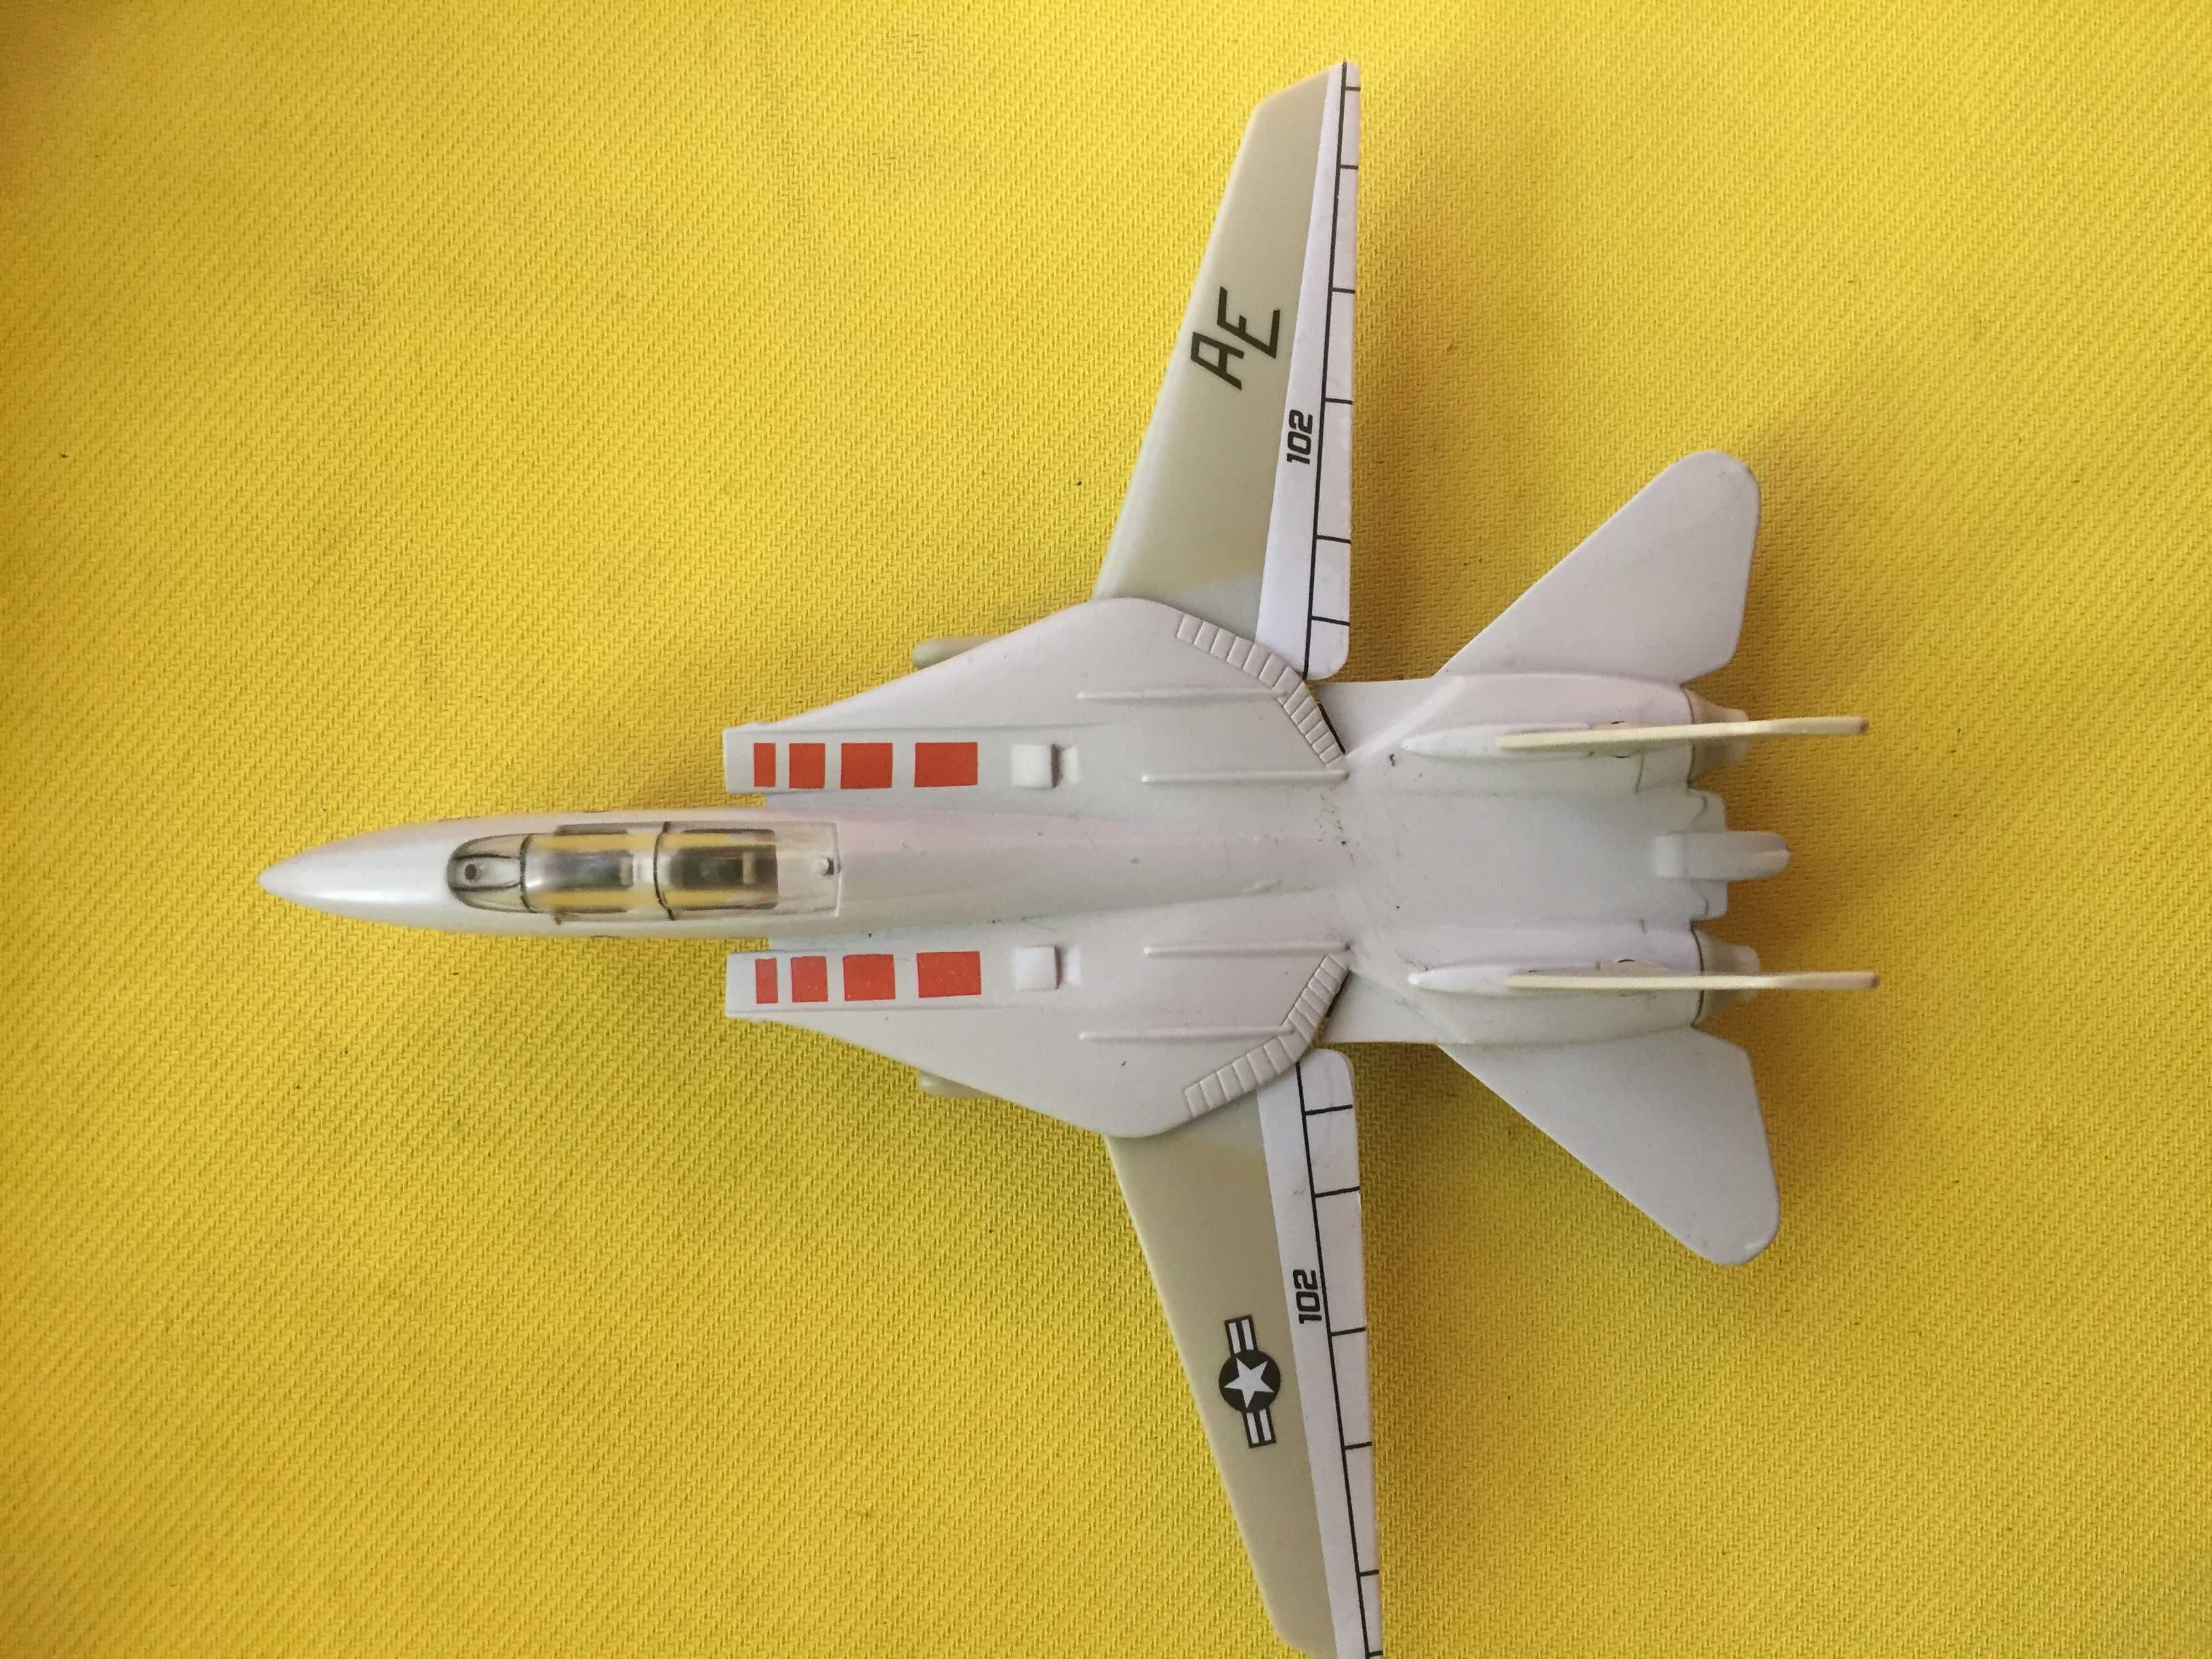 Игрушечная модель сверхзвукового военного самолета.